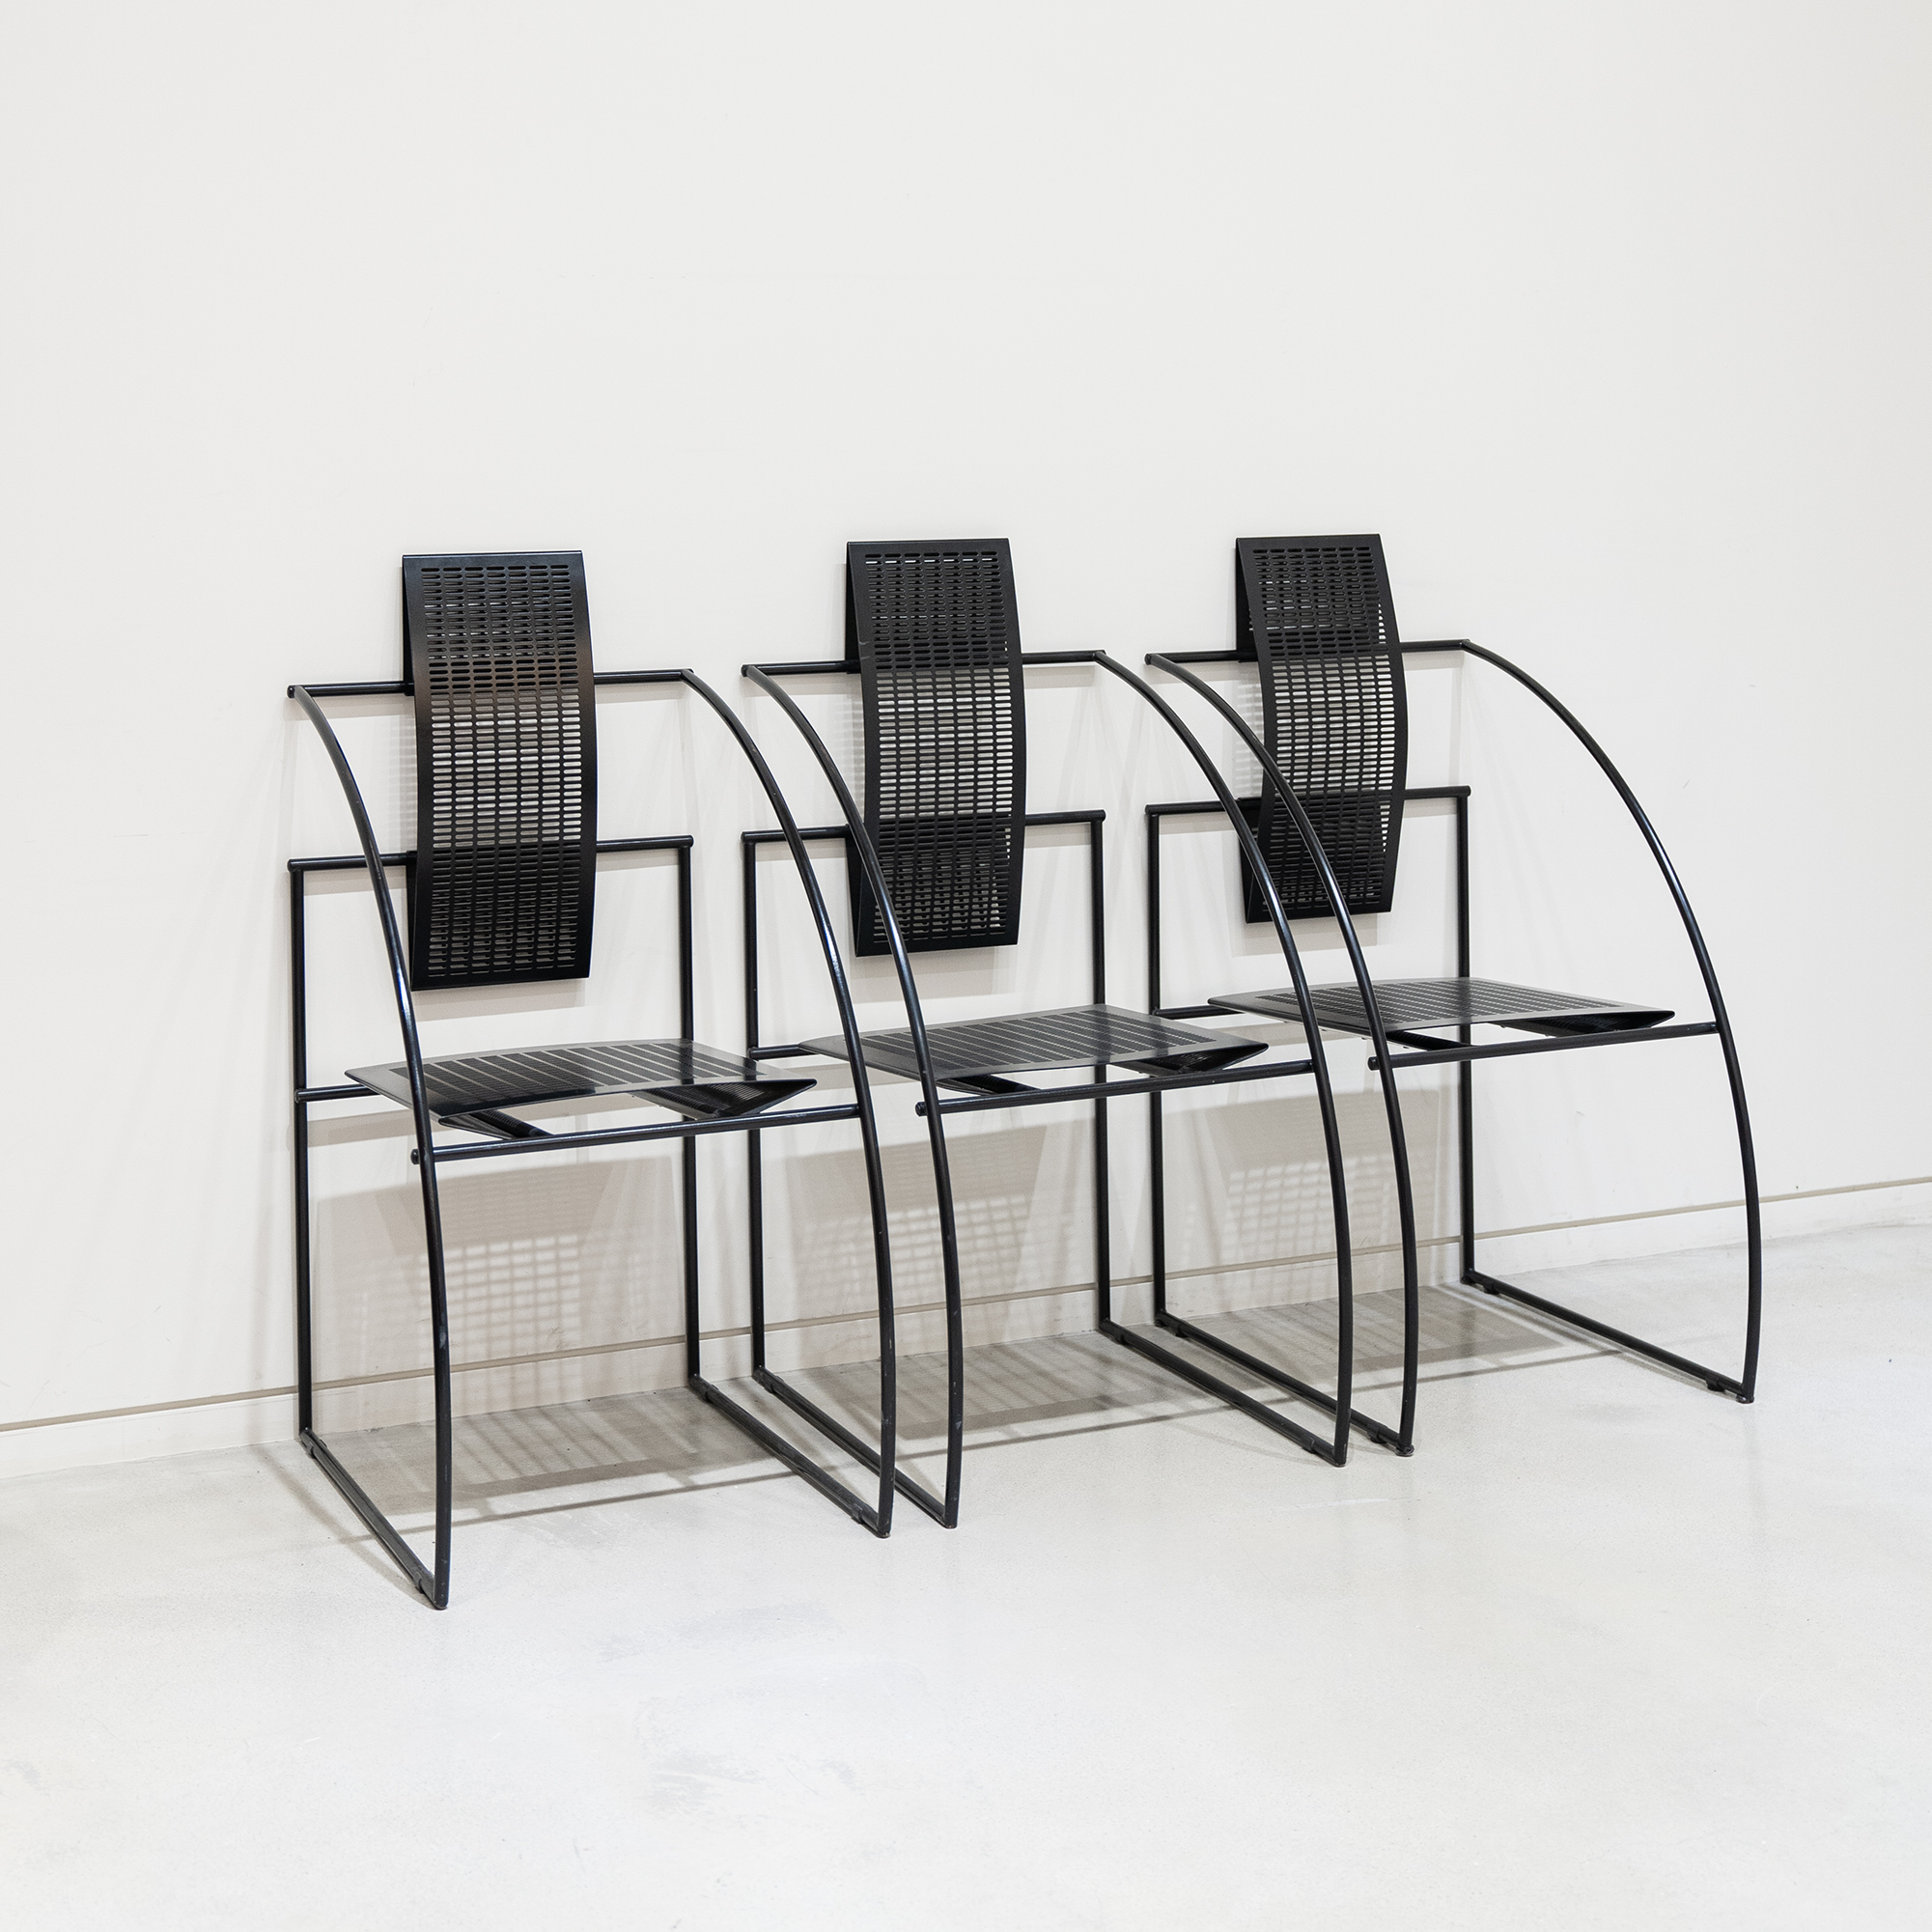 Quinta Chair by Mario Botta